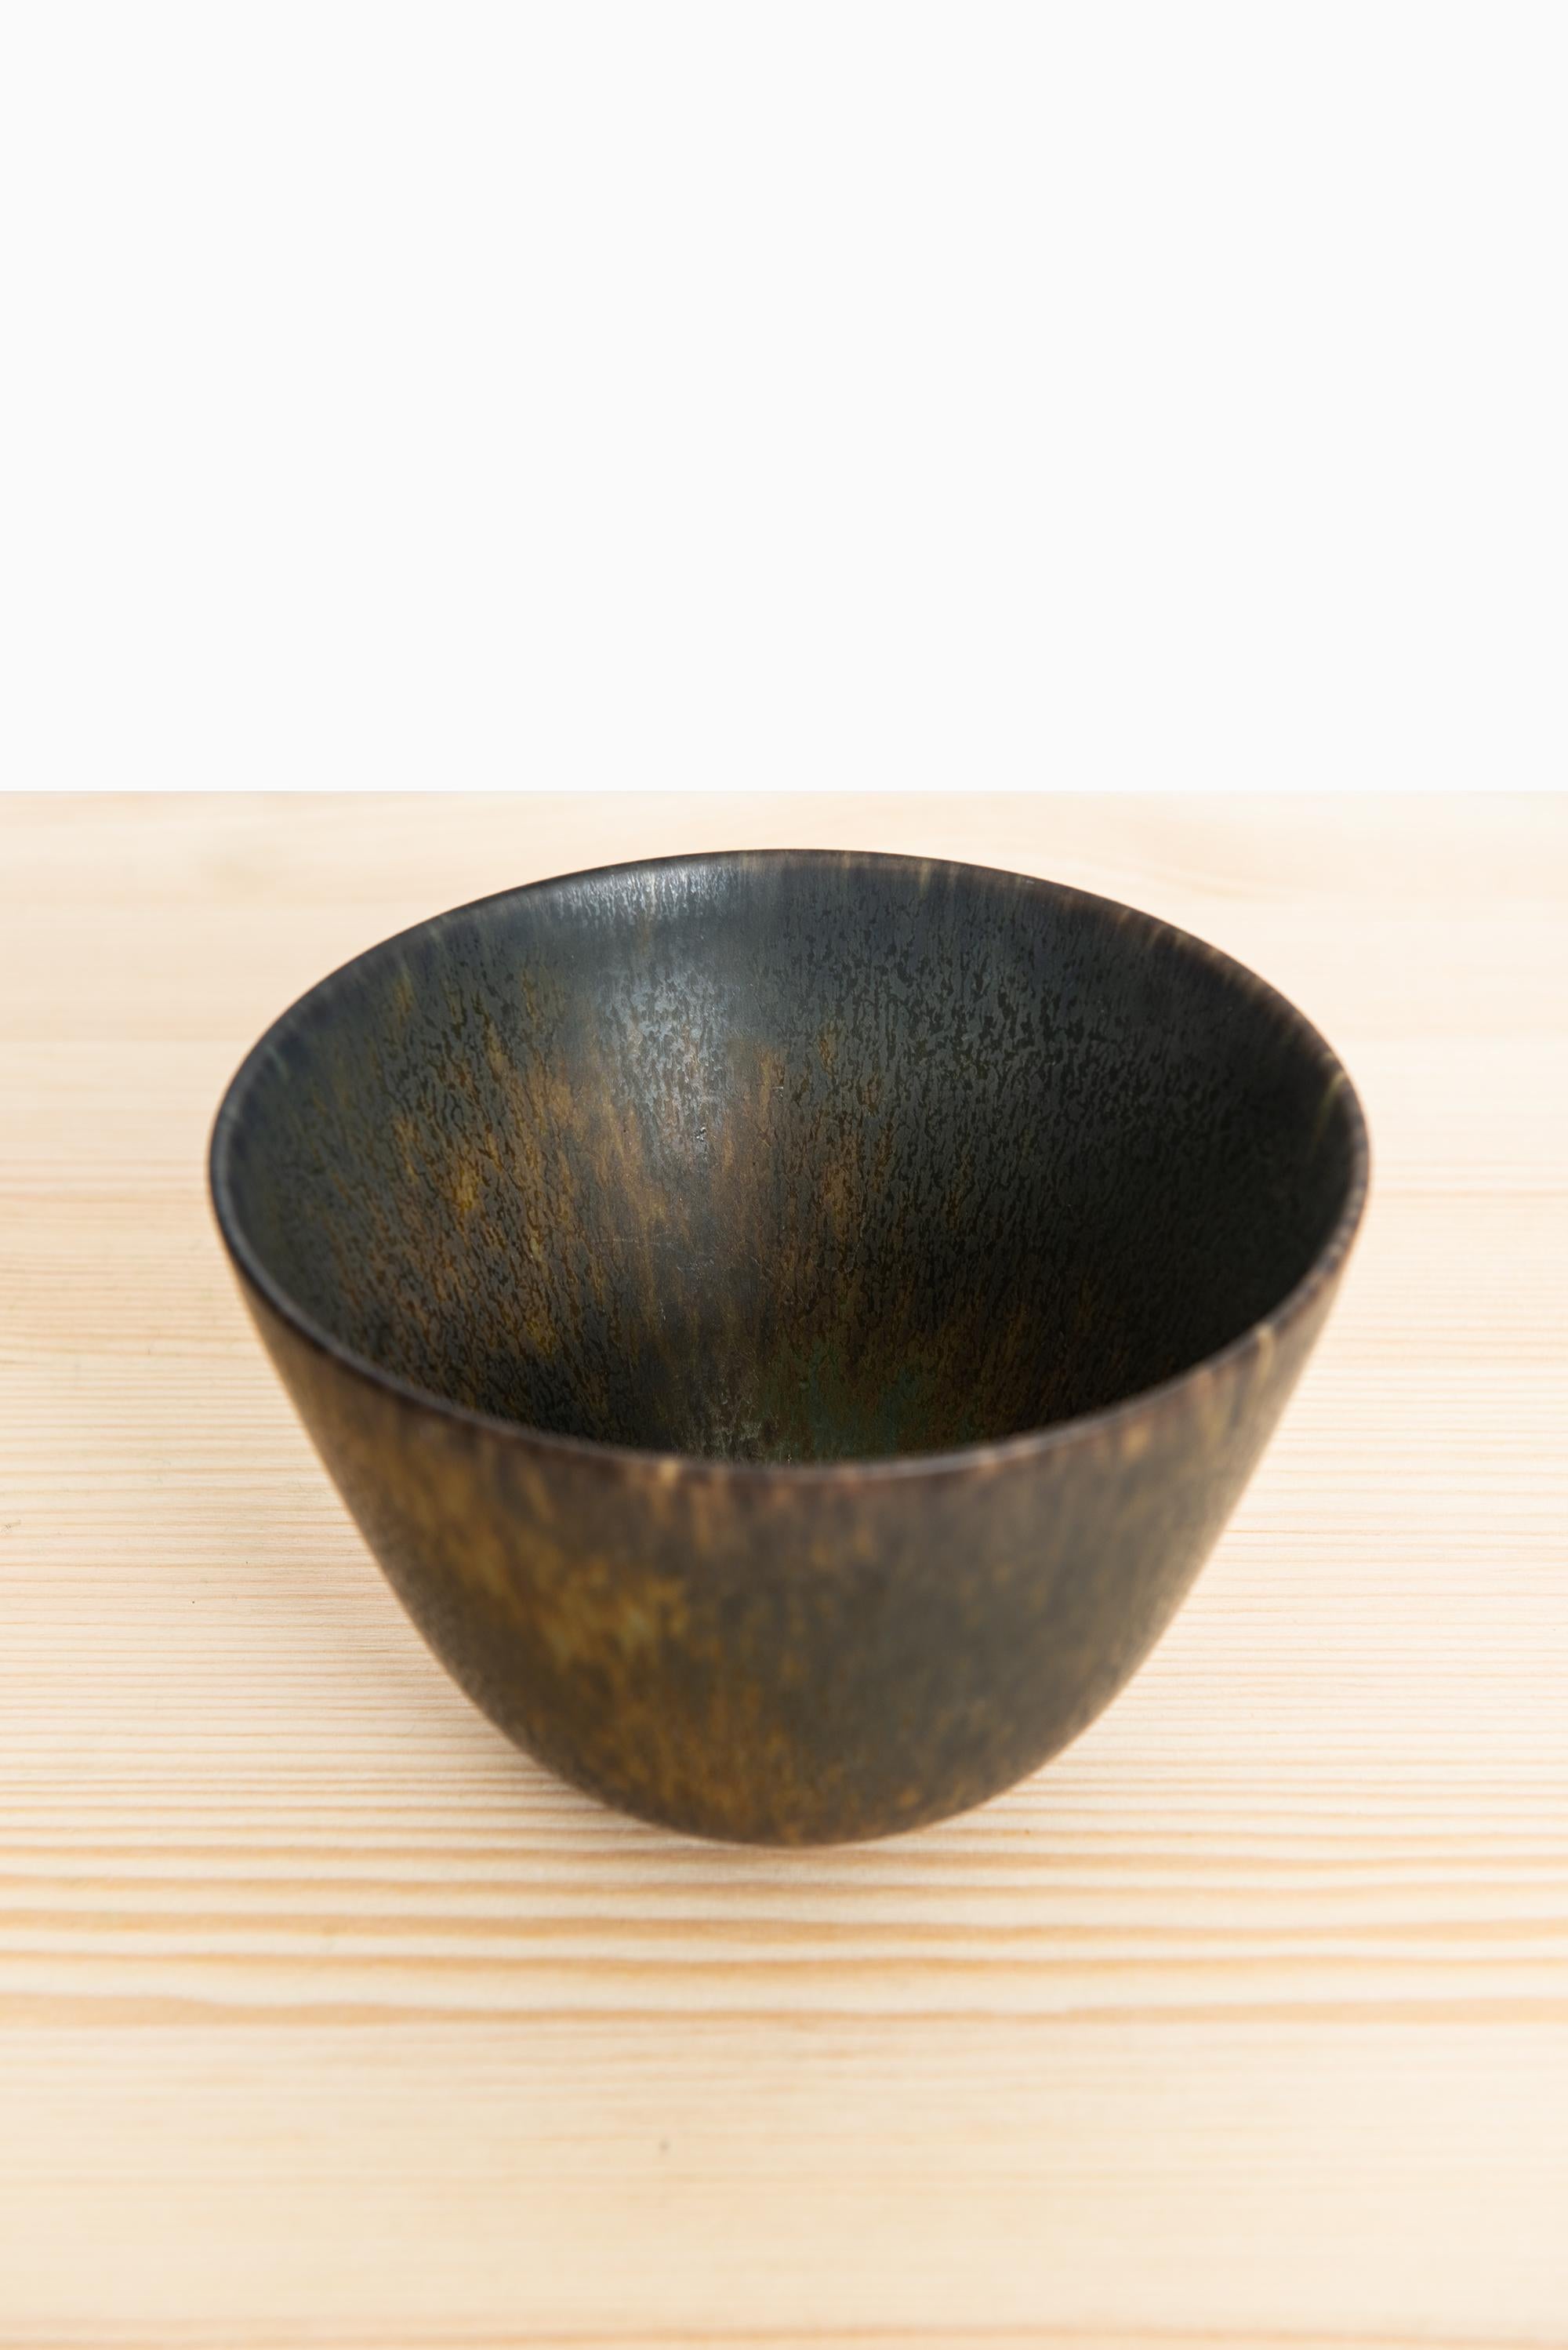 Swedish Gunnar Nylund Ceramic Bowl Model ARU by Rörstrand in Sweden